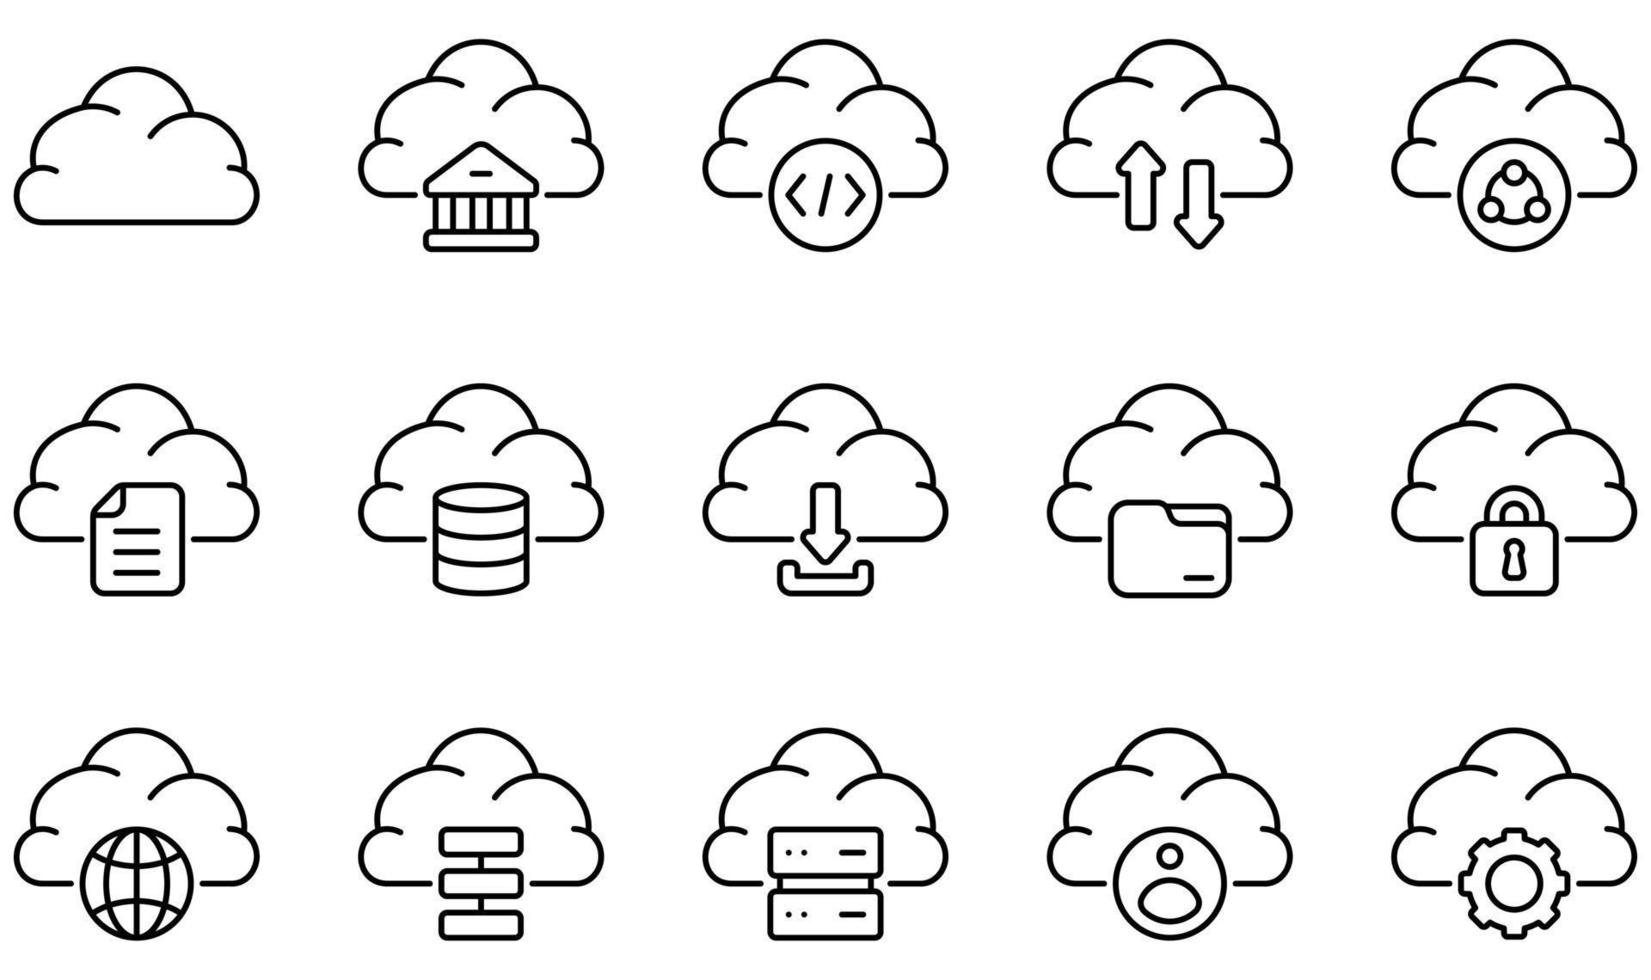 conjunto de ícones vetoriais relacionados à tecnologia de nuvem. contém ícones como nuvem, banco, codificação, computação em nuvem, dados, banco de dados e muito mais. vetor